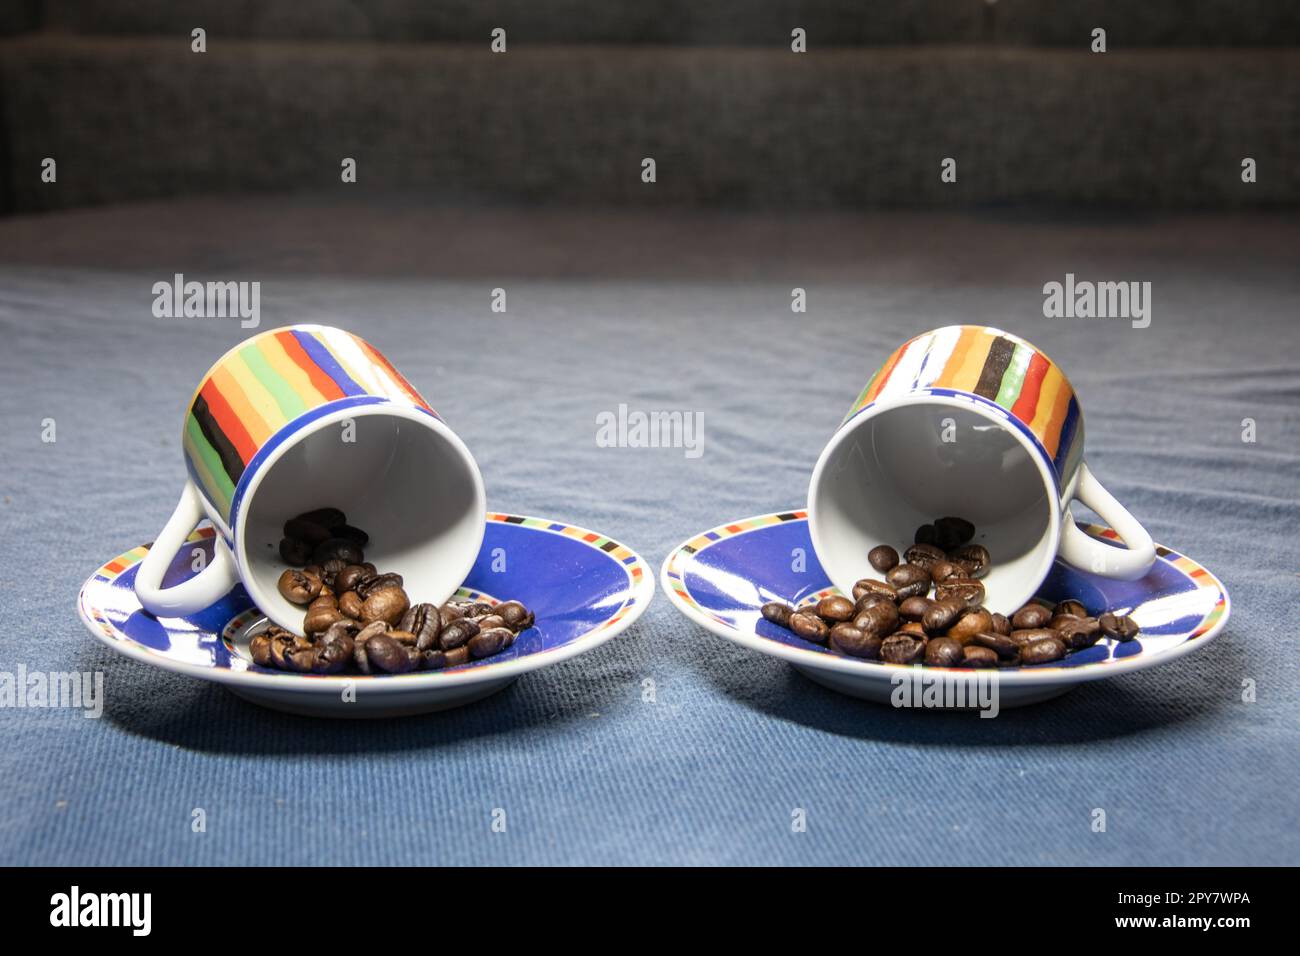 Le café arabica fraîchement torréfié tourne dans un bol en verre Banque D'Images